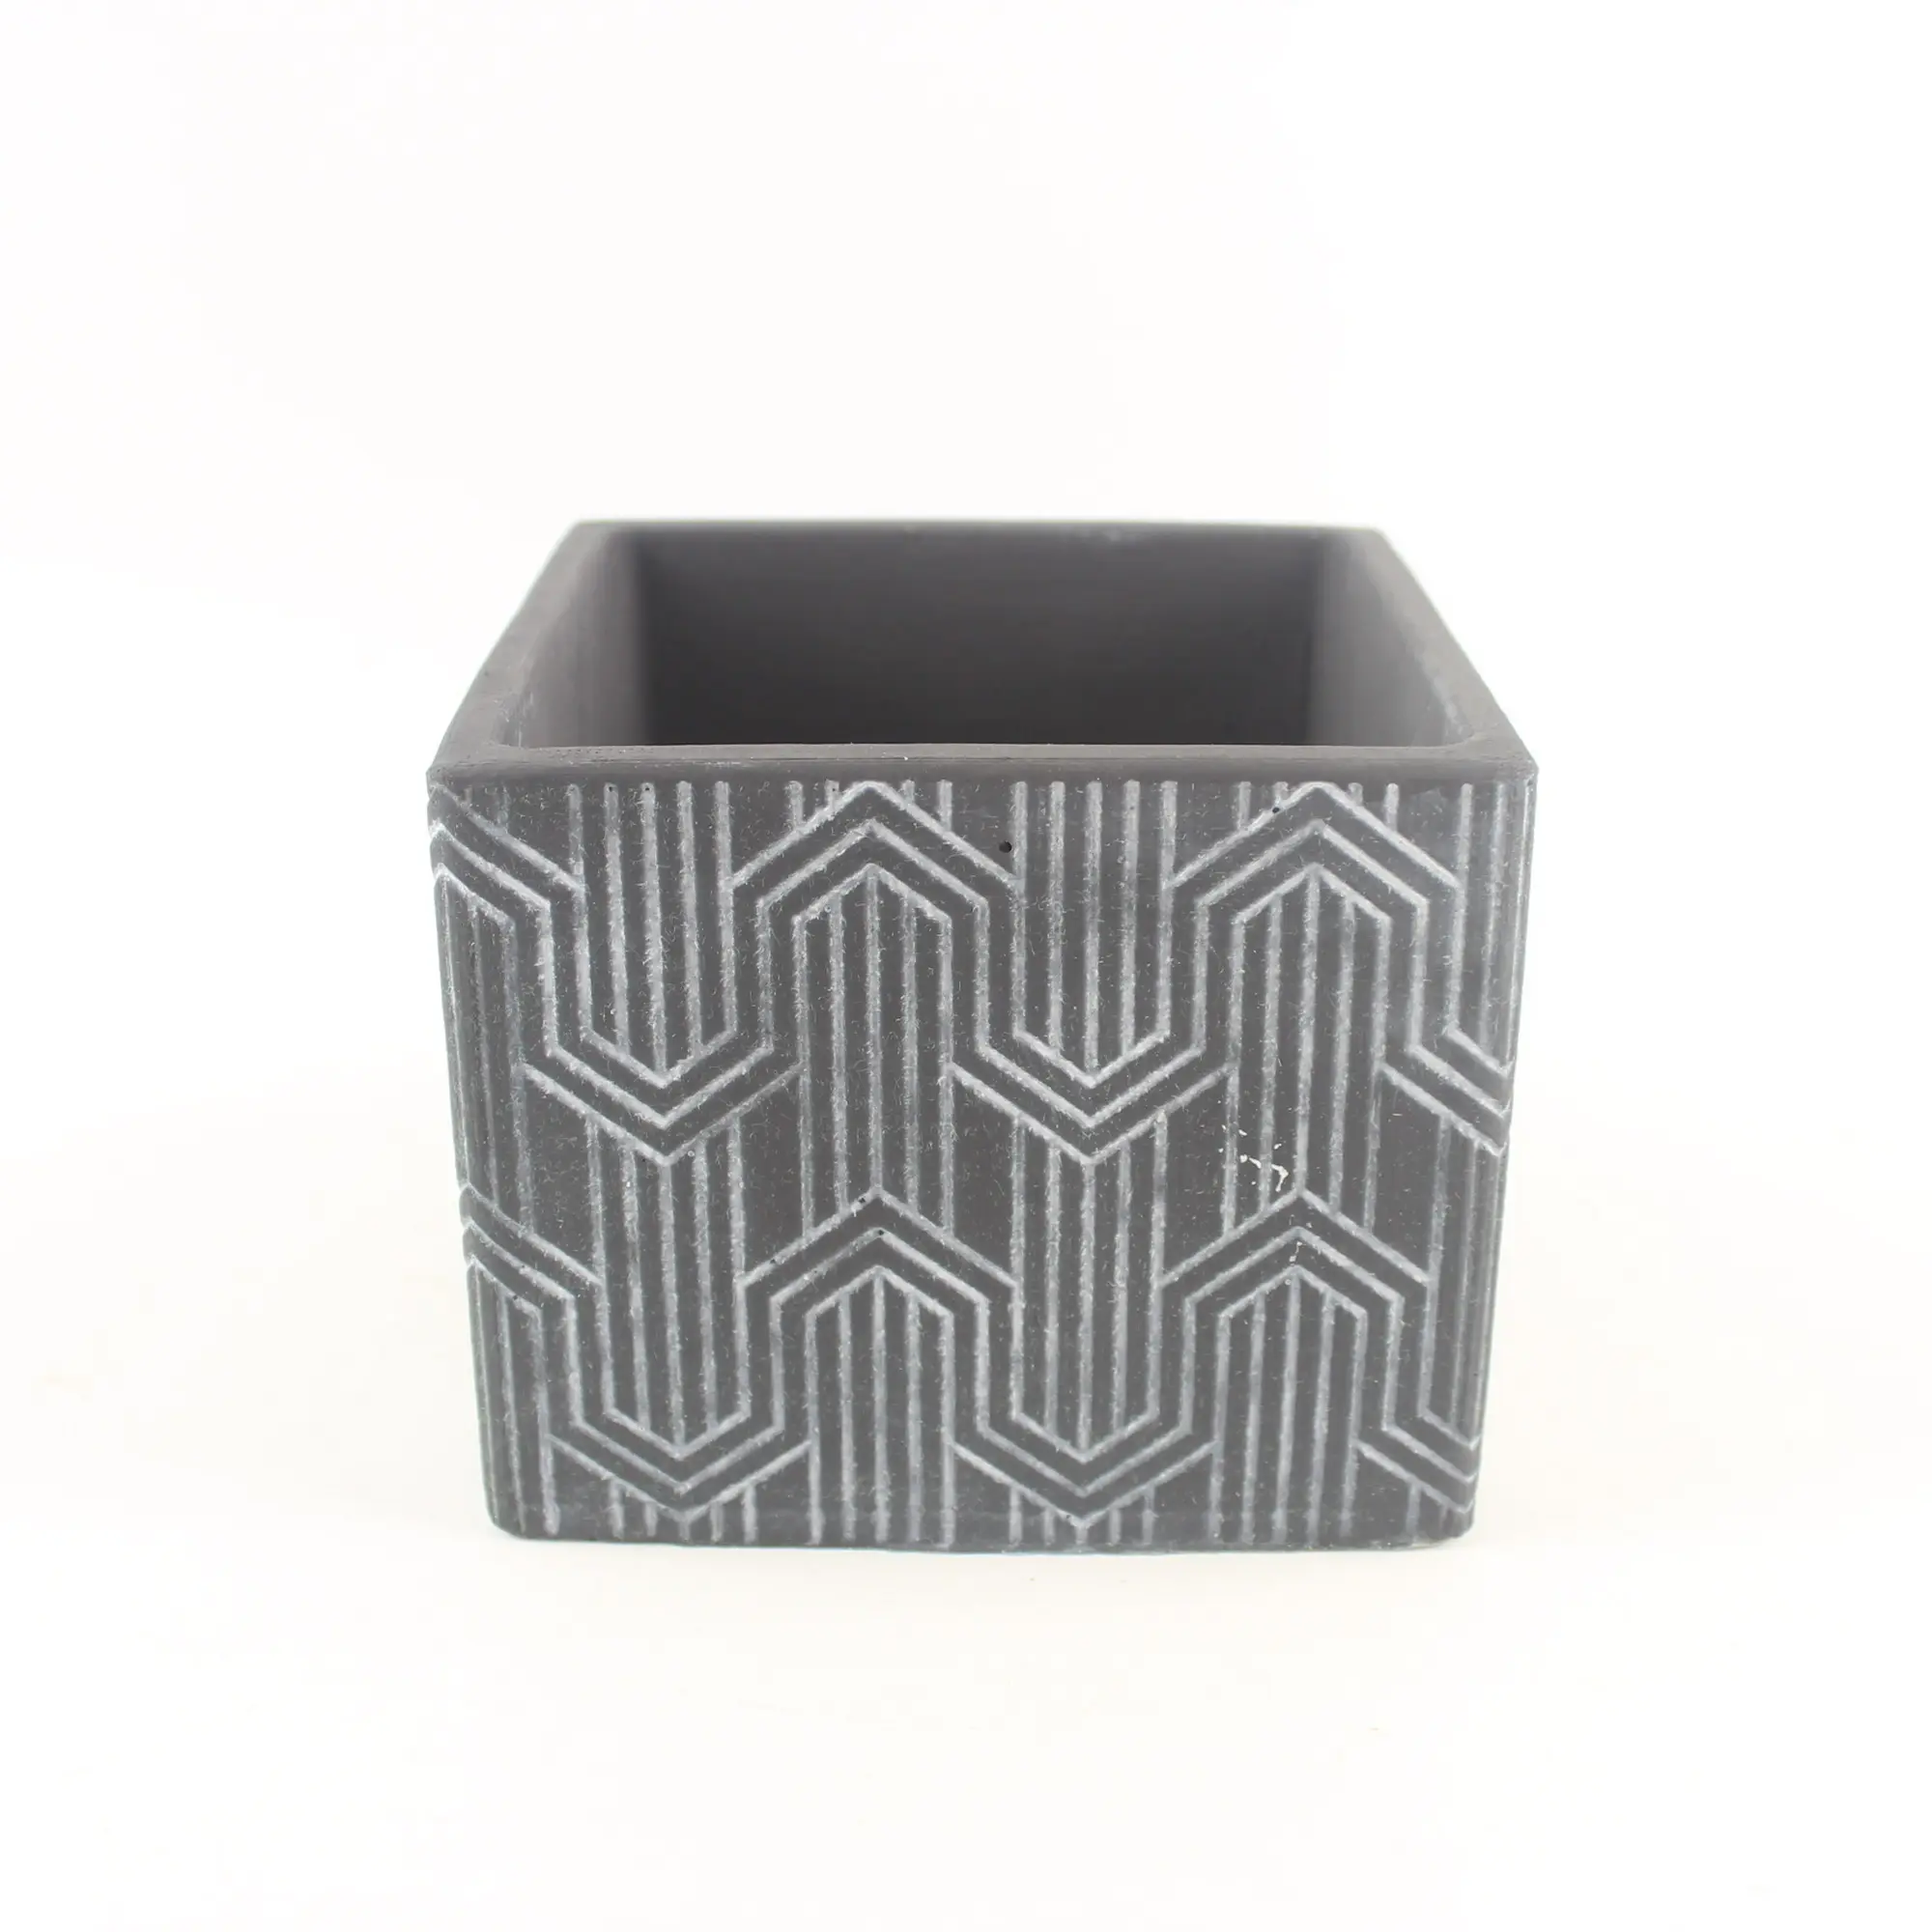 Factory newest wholesale small geometric pattern bonsai pots cement flower pots decor